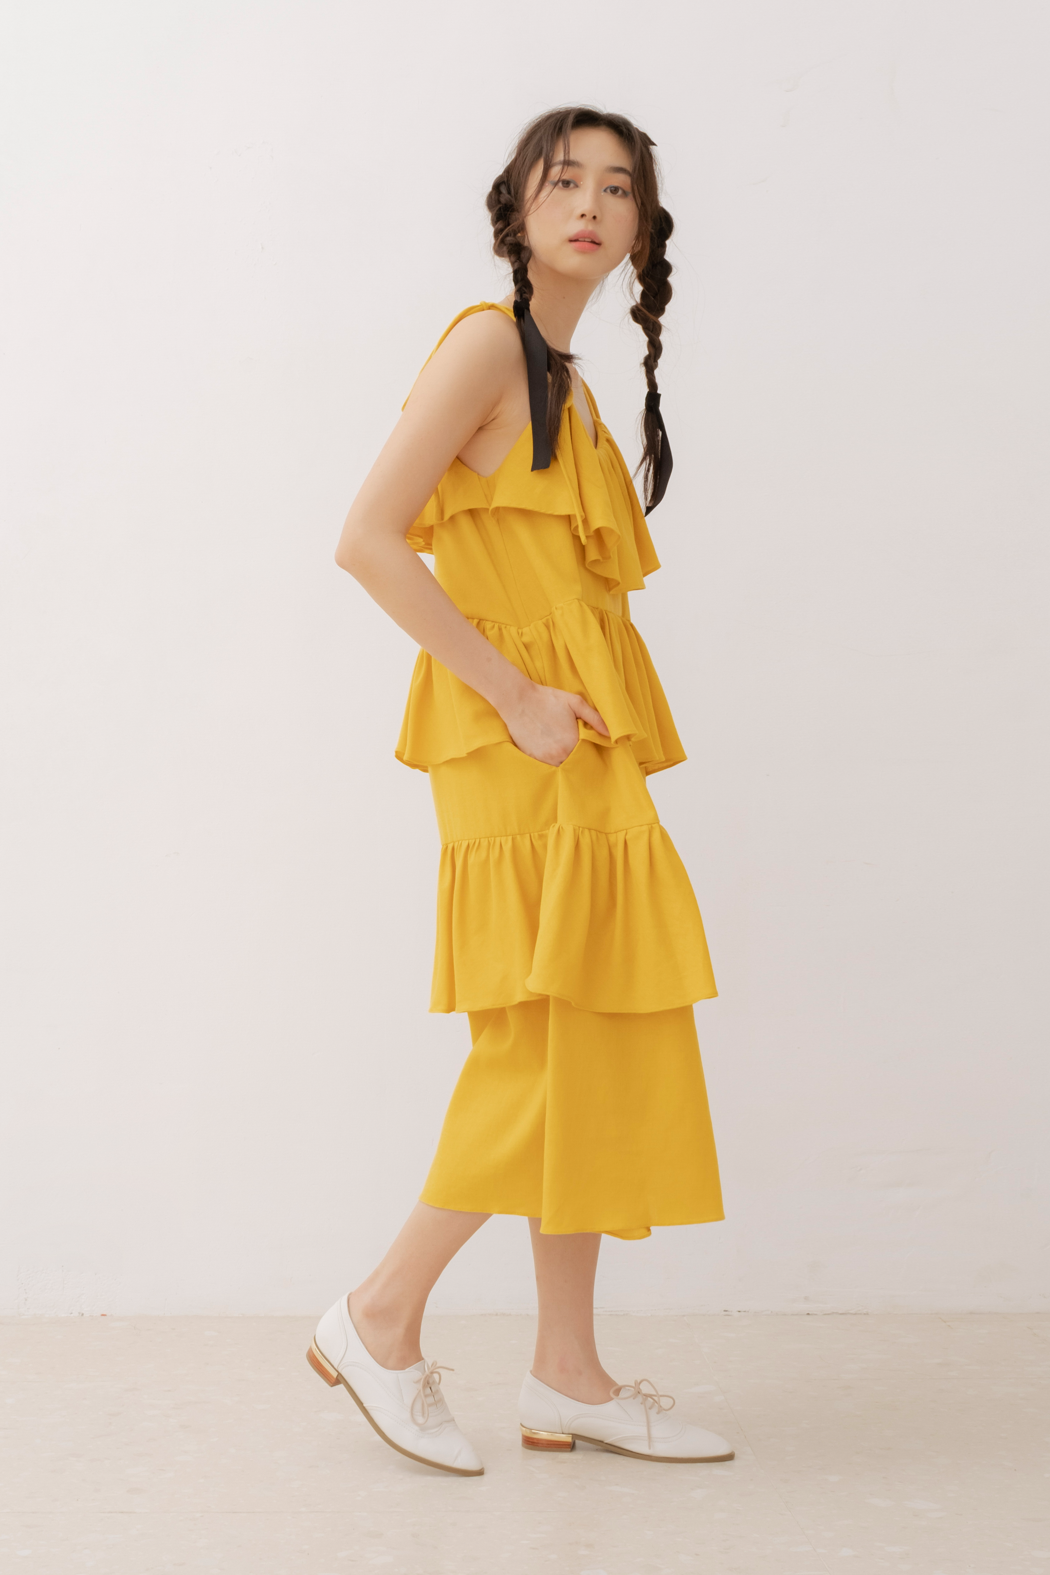 Laya Dress in Yellow (40% Off)